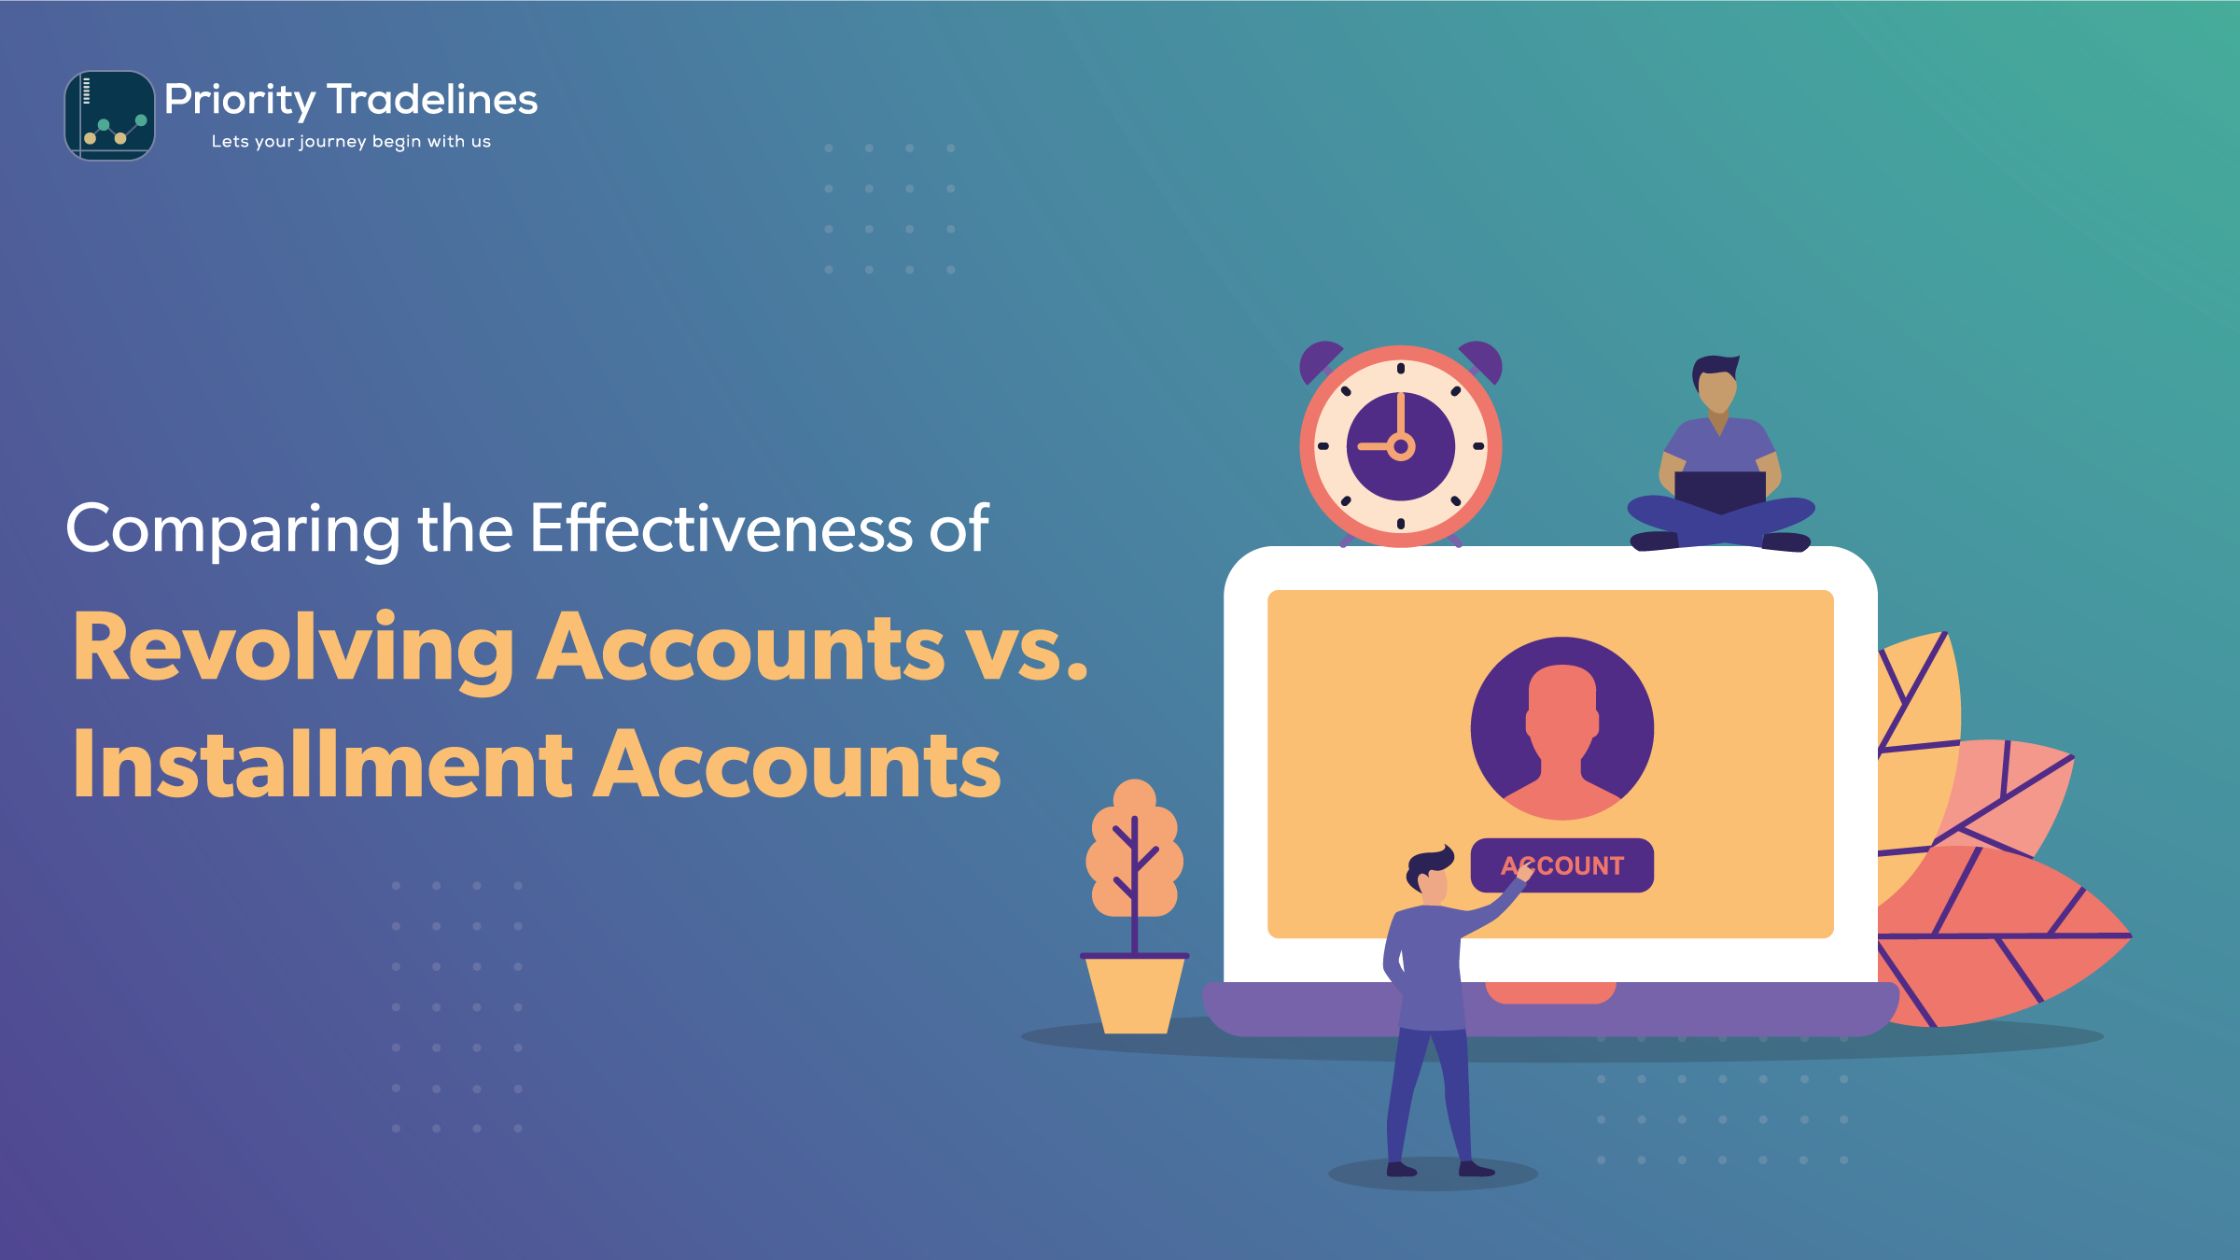 Comparing the Effectiveness of Revolving Accounts vs Installment Accounts